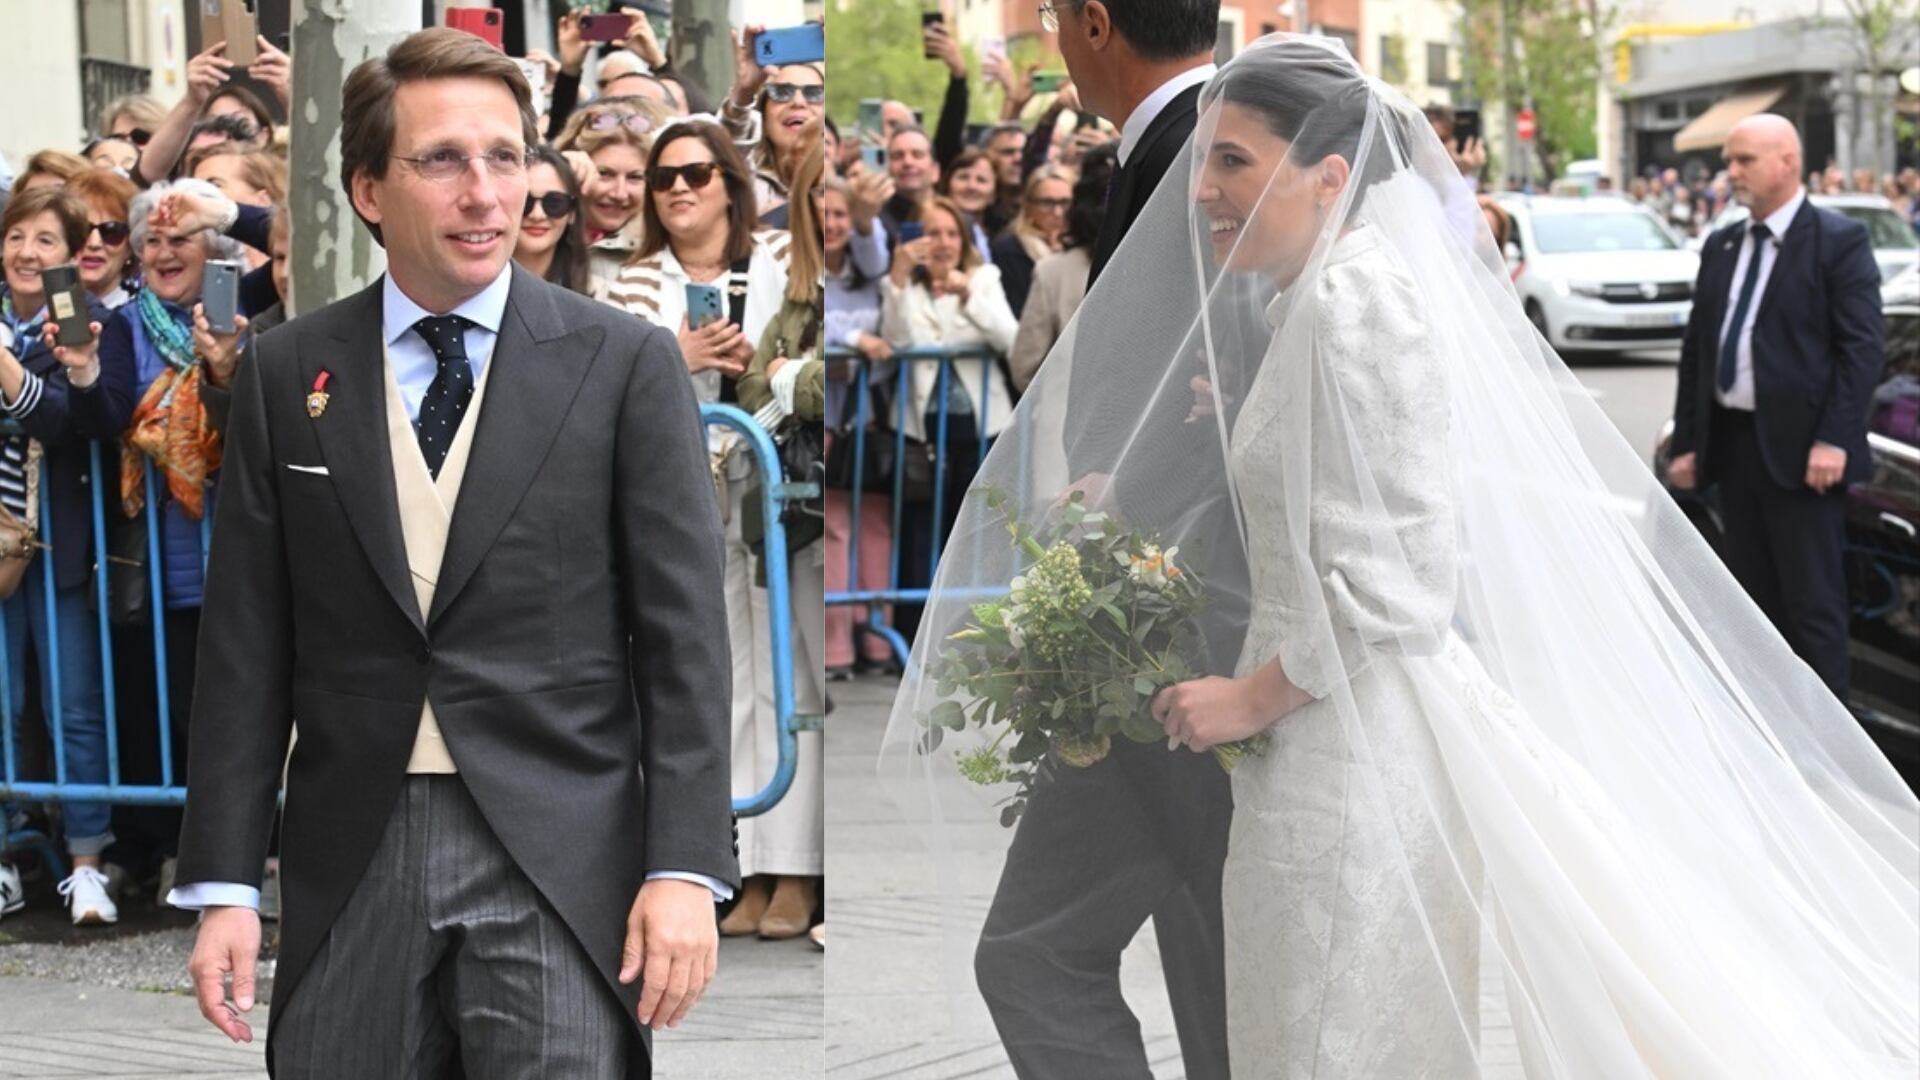 José Luis Martínez-Almeida y Teresa de Urquijo entran a la Iglesia San Francisco de Borja para celebrar su boda